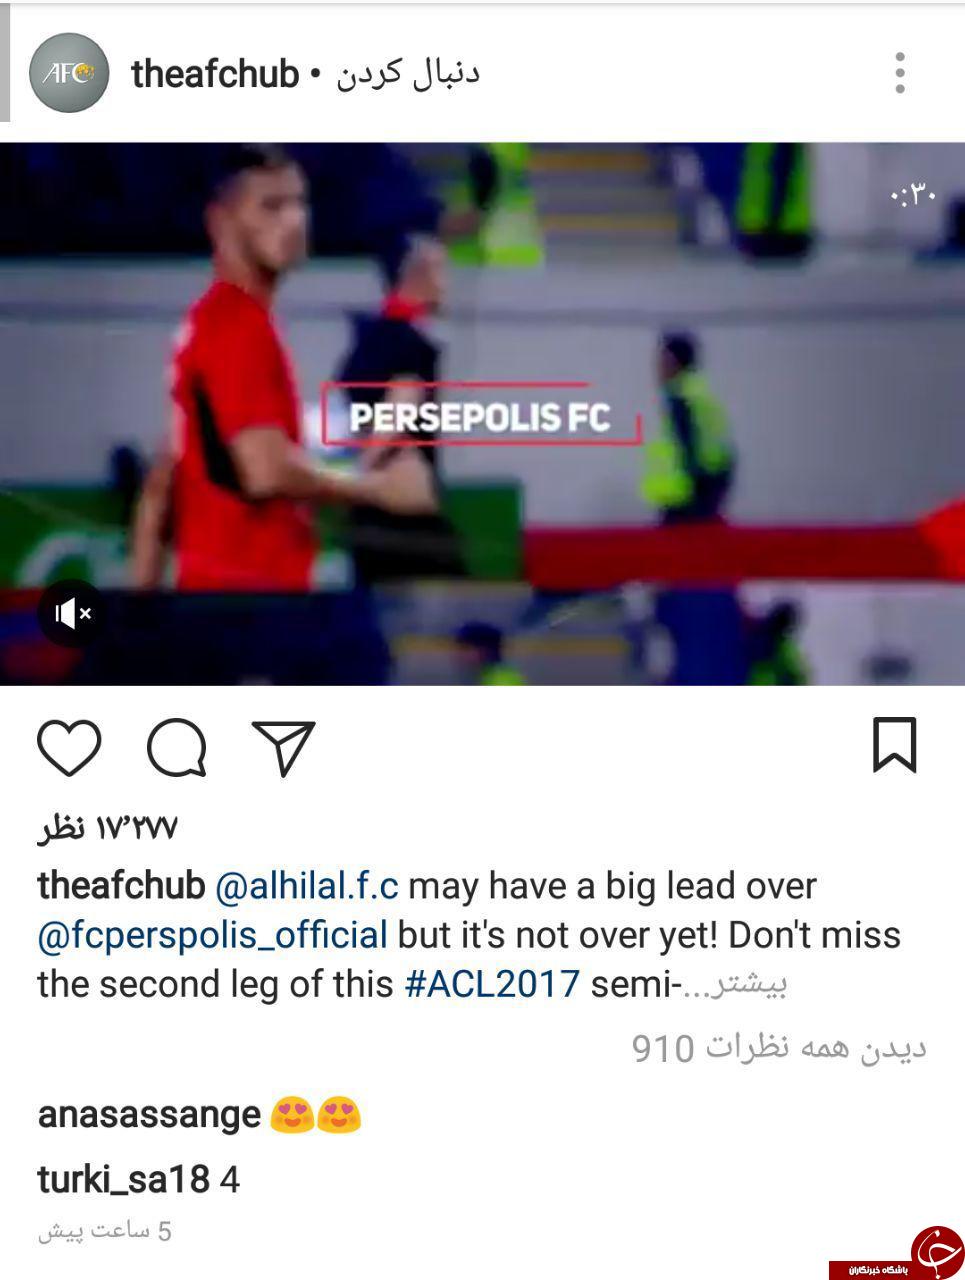 ویدئو پیش بازی پرسپولیس و الهلال در اینستاگرام Afc